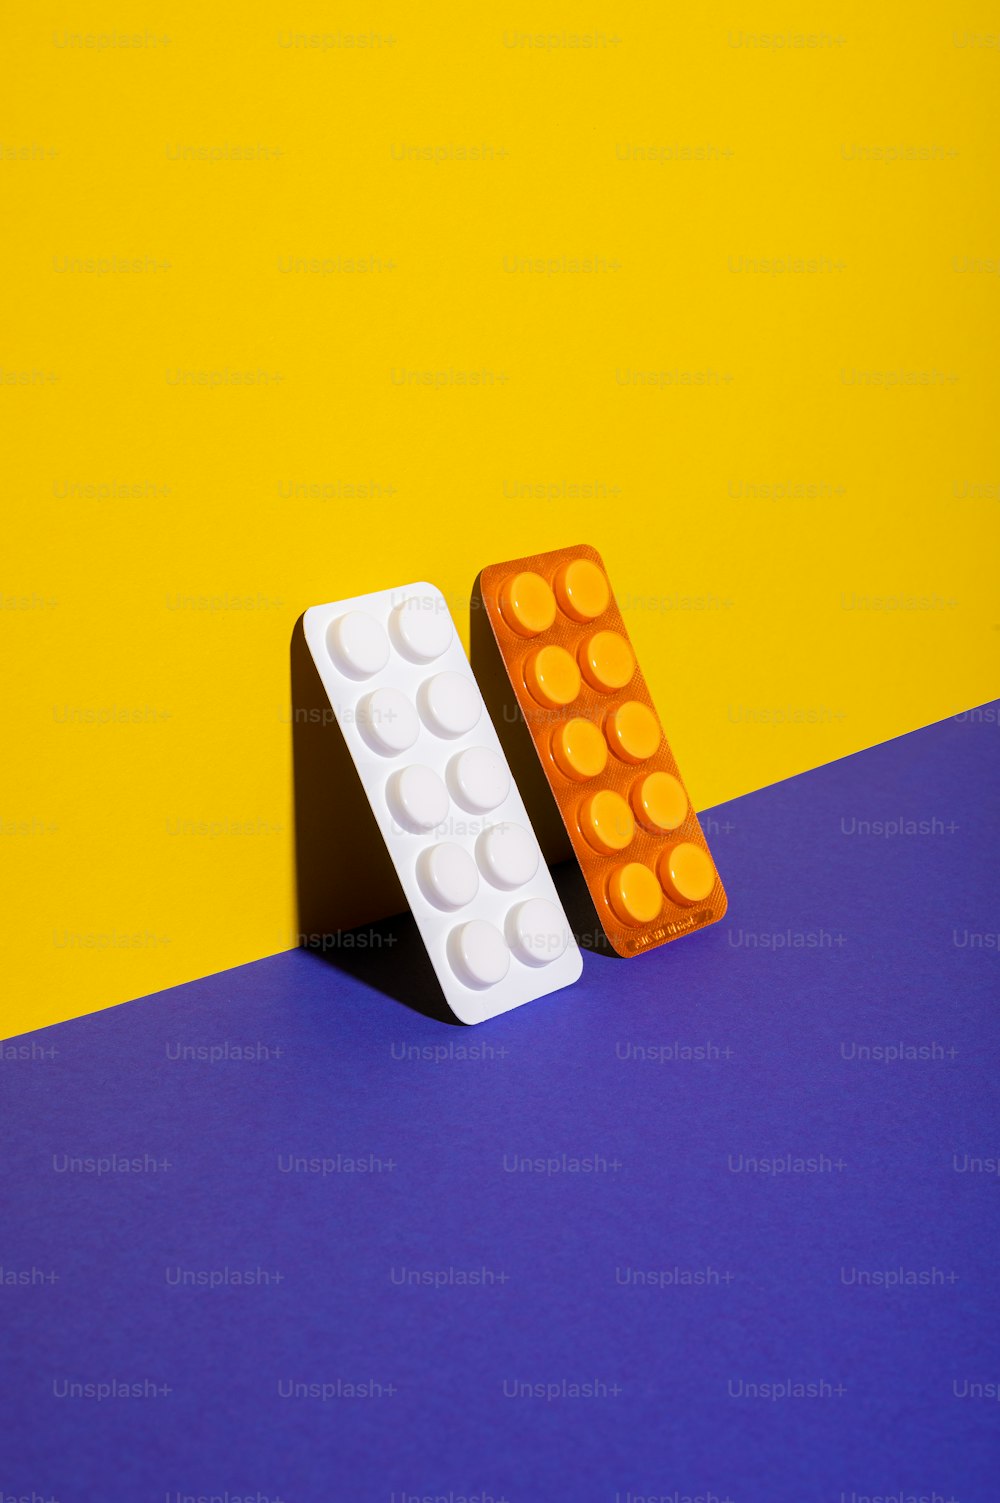 Ein Paar Legosteine auf einer blauen Oberfläche